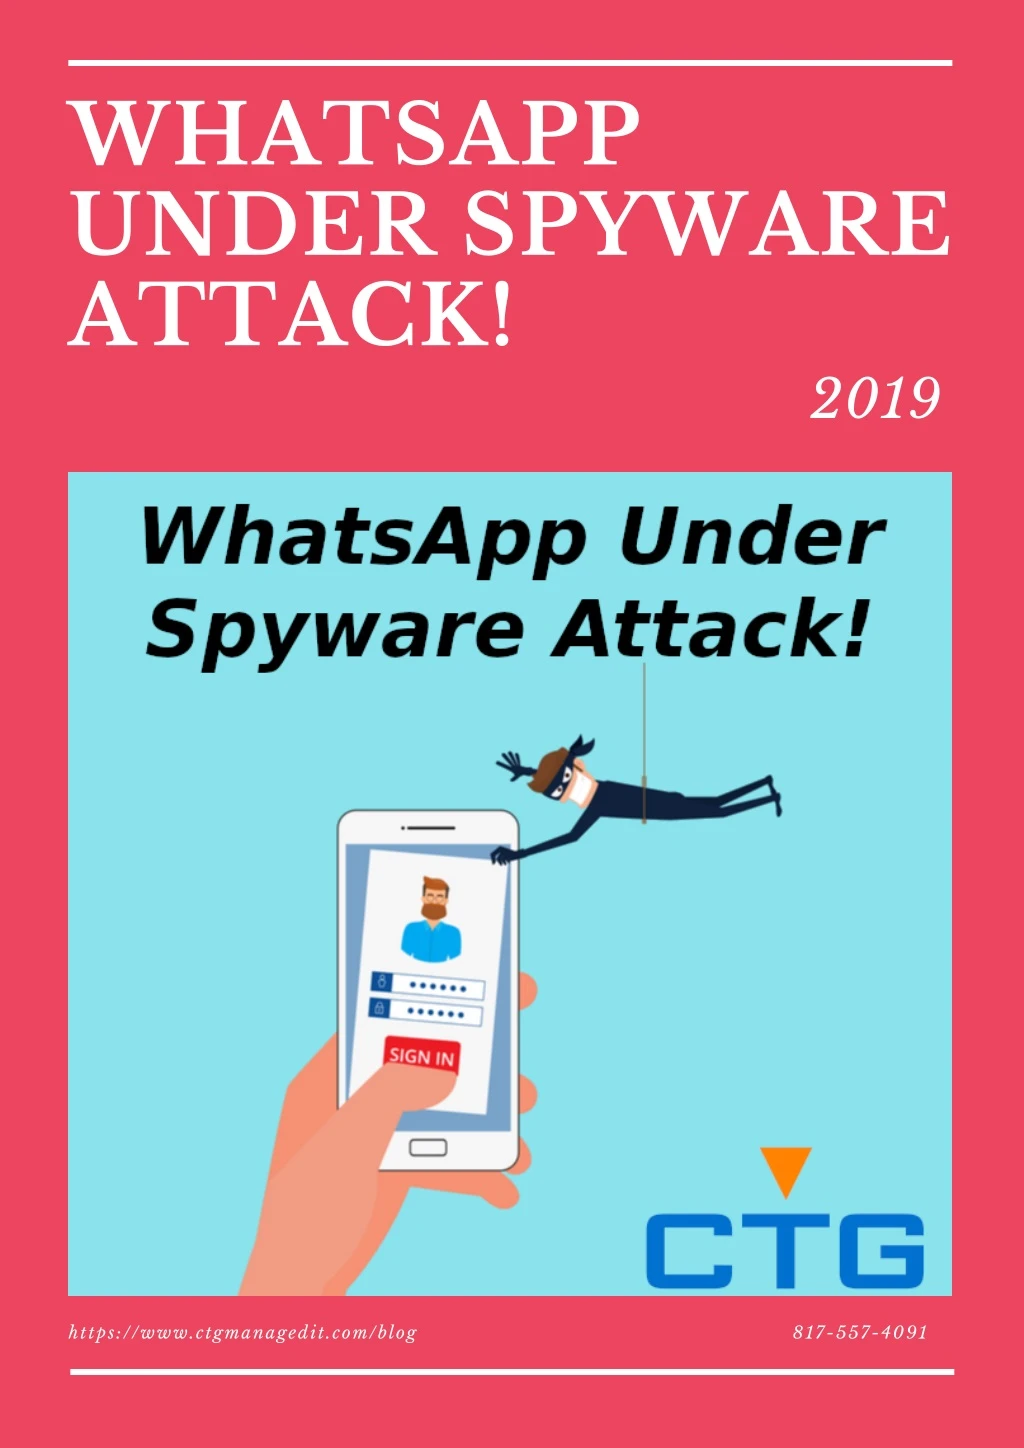 whatsapp under spyware attack